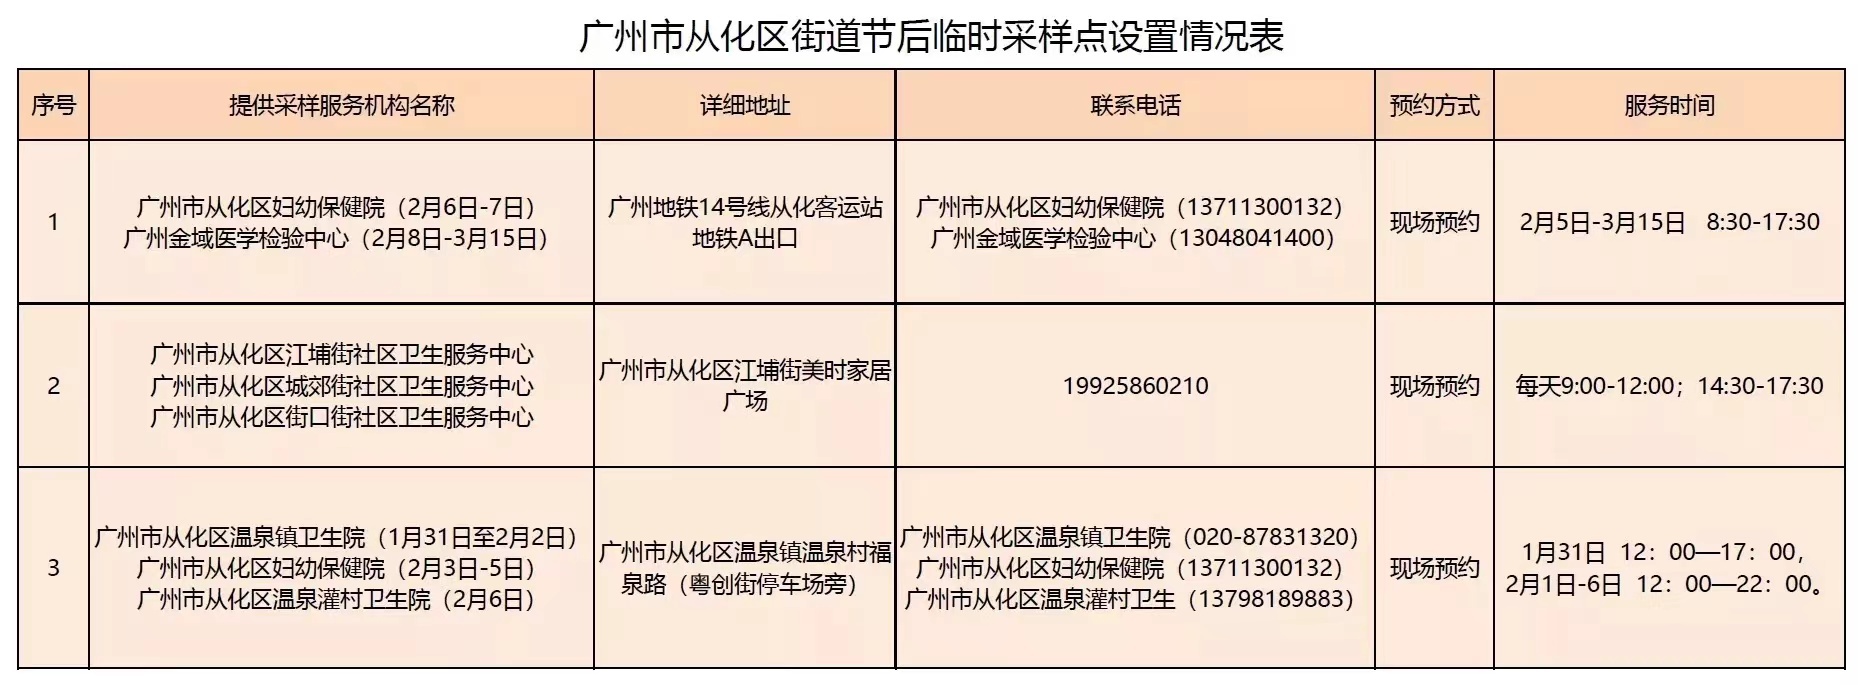 广州11区最新“愿检尽检”核酸采样点汇总（含新增采样点）